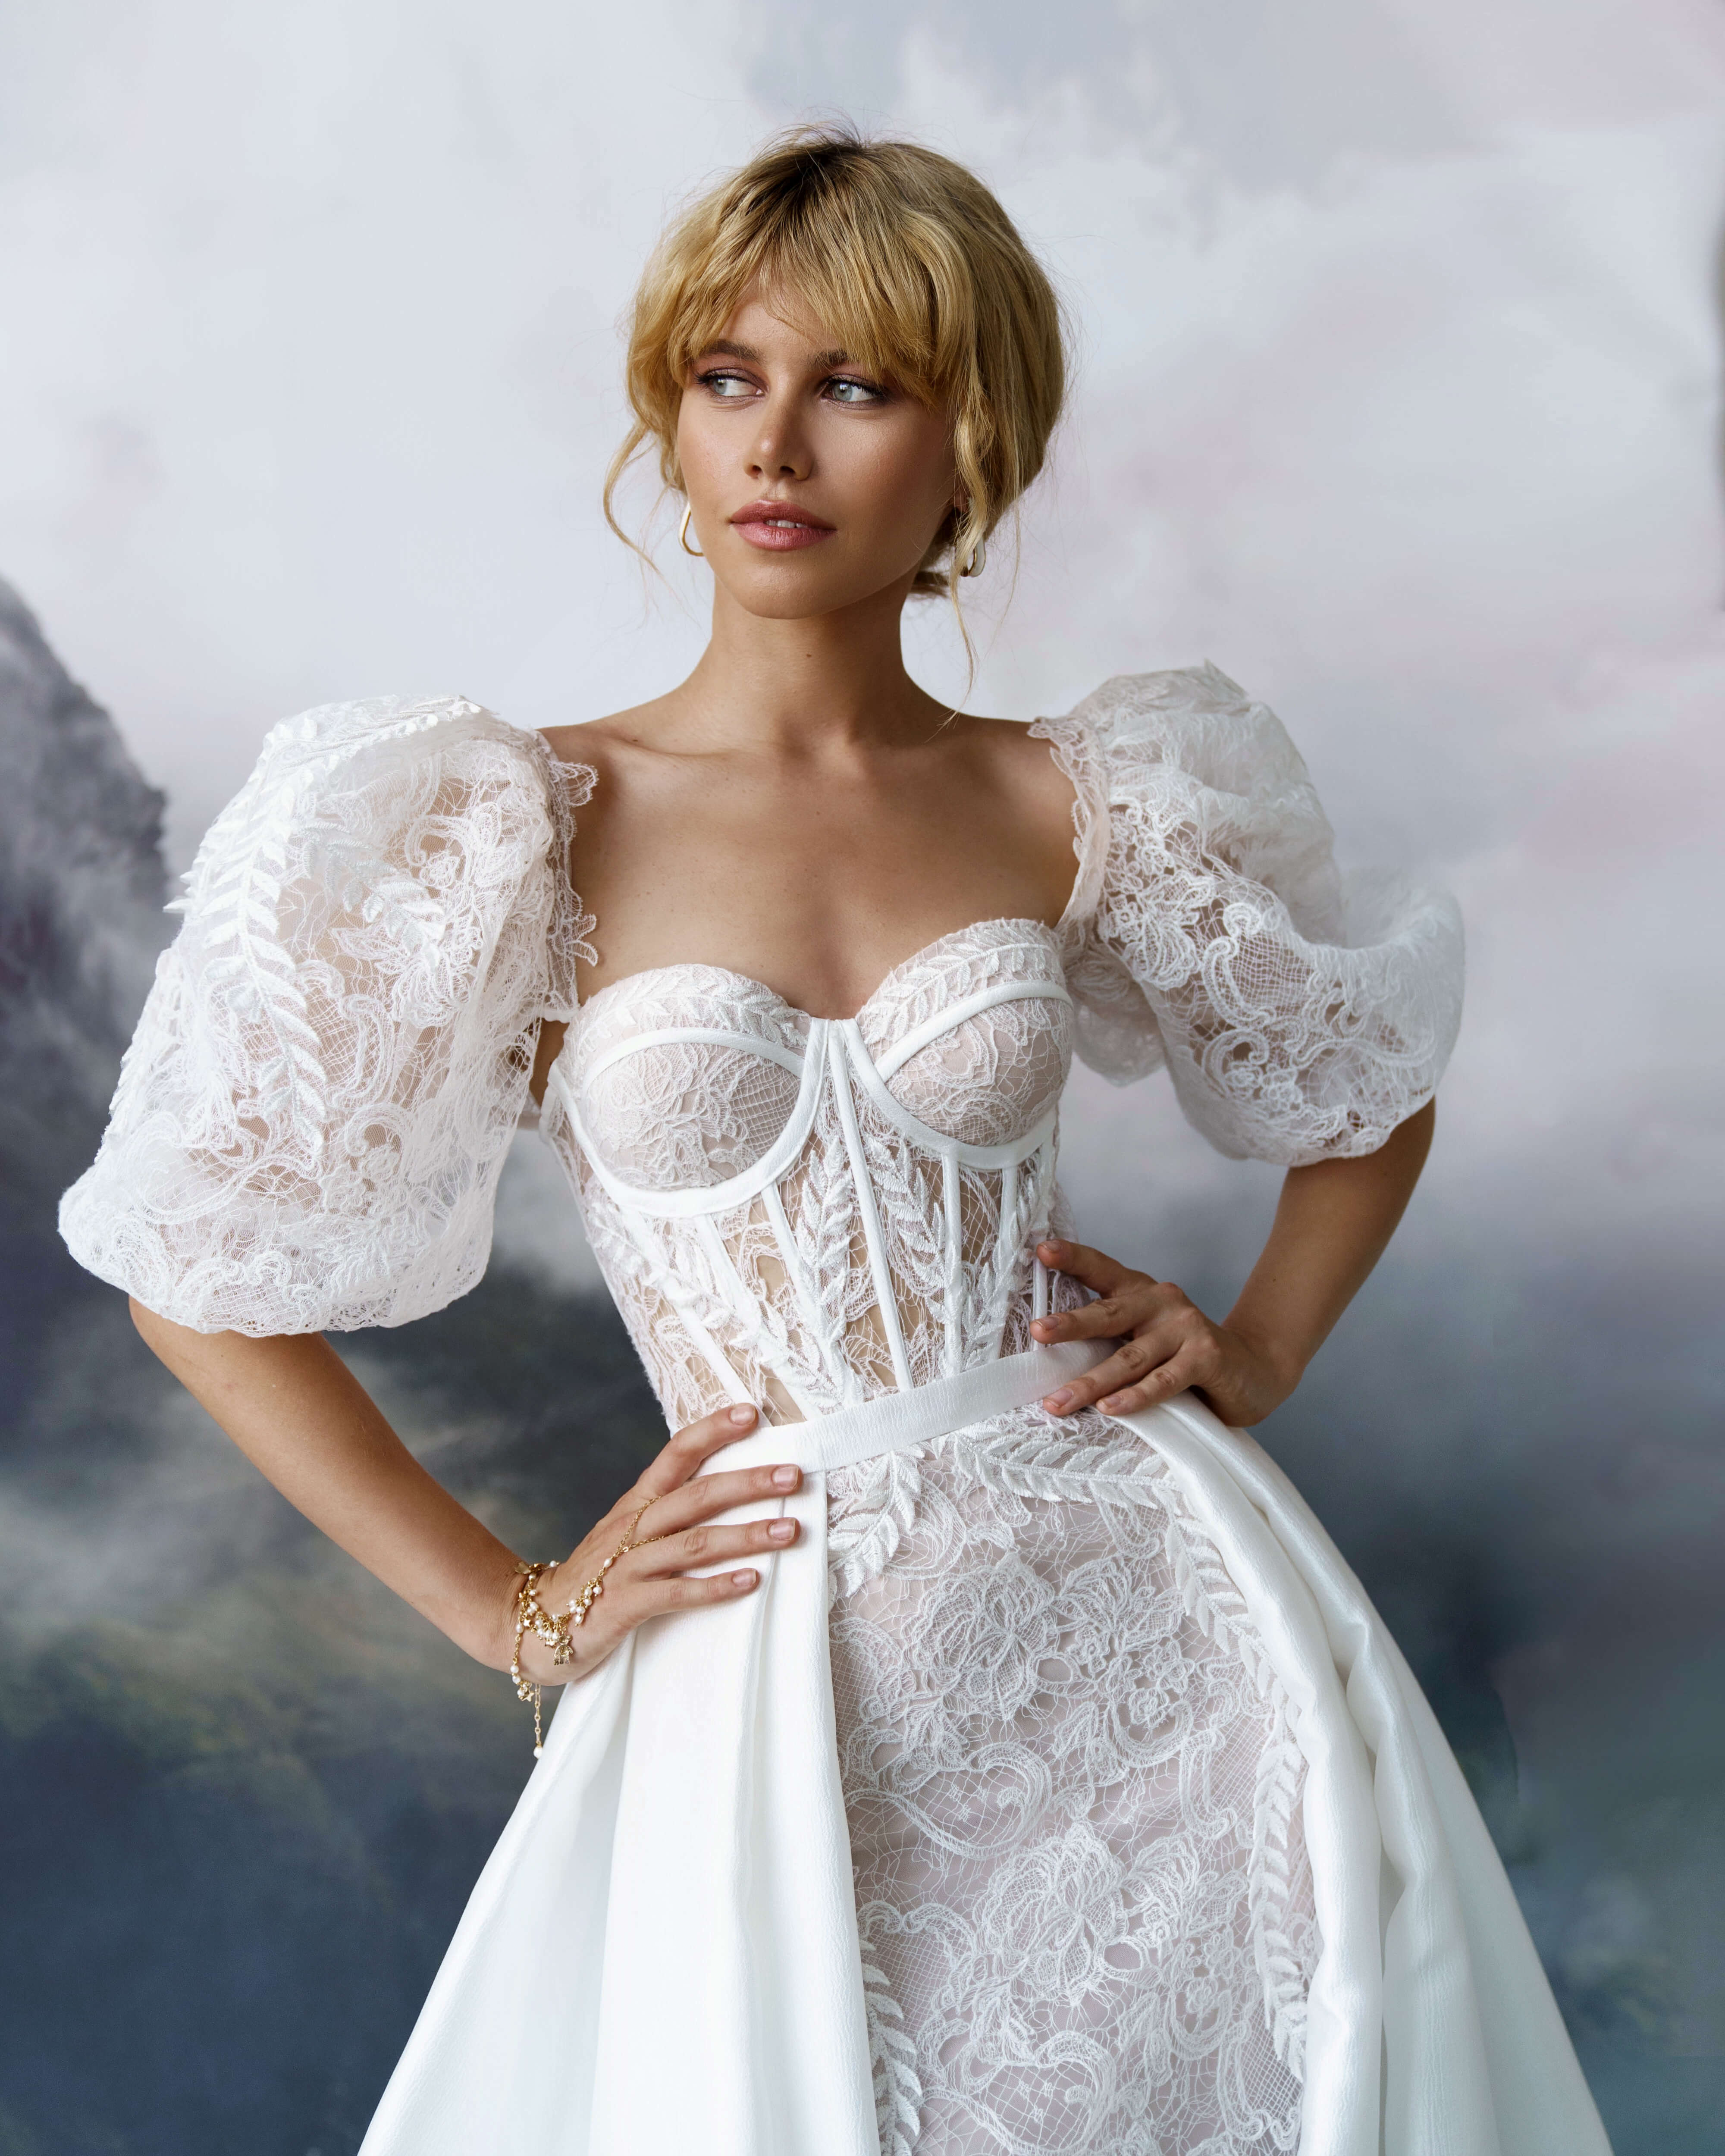 Купить свадебное платье «Юри» Бламмо Биамо из коллекции Сказка 2022 года в салоне «Мэри Трюфель»